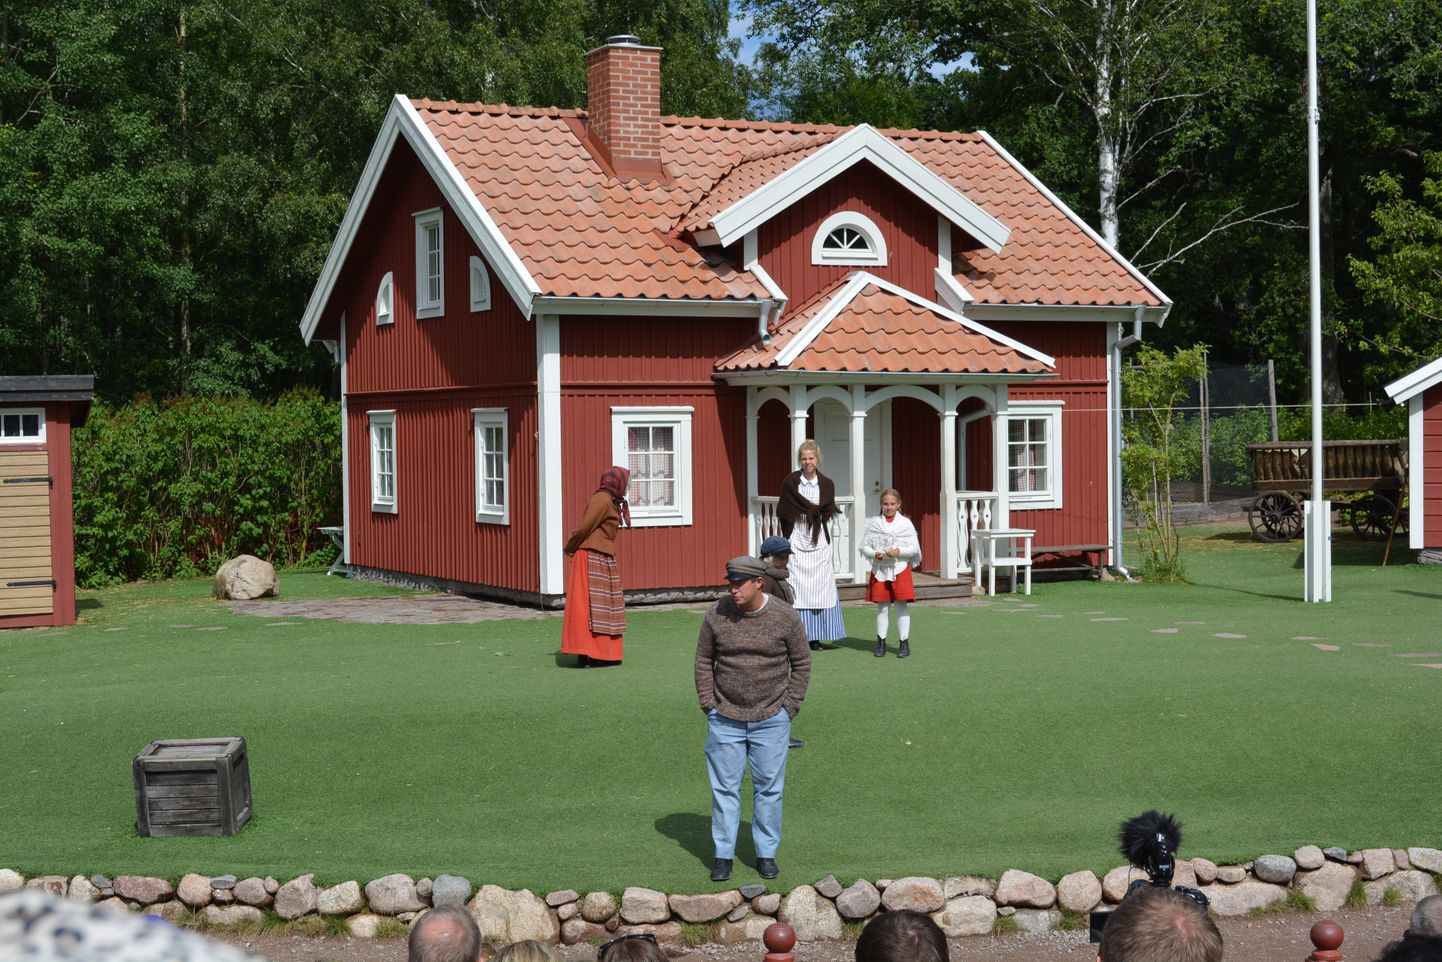 Lennebergas Emīla sēta ar grāmatas varoņiem Astridas Lindgrēnes tematiskajā parkā Vimerbijā, Zviedrijā